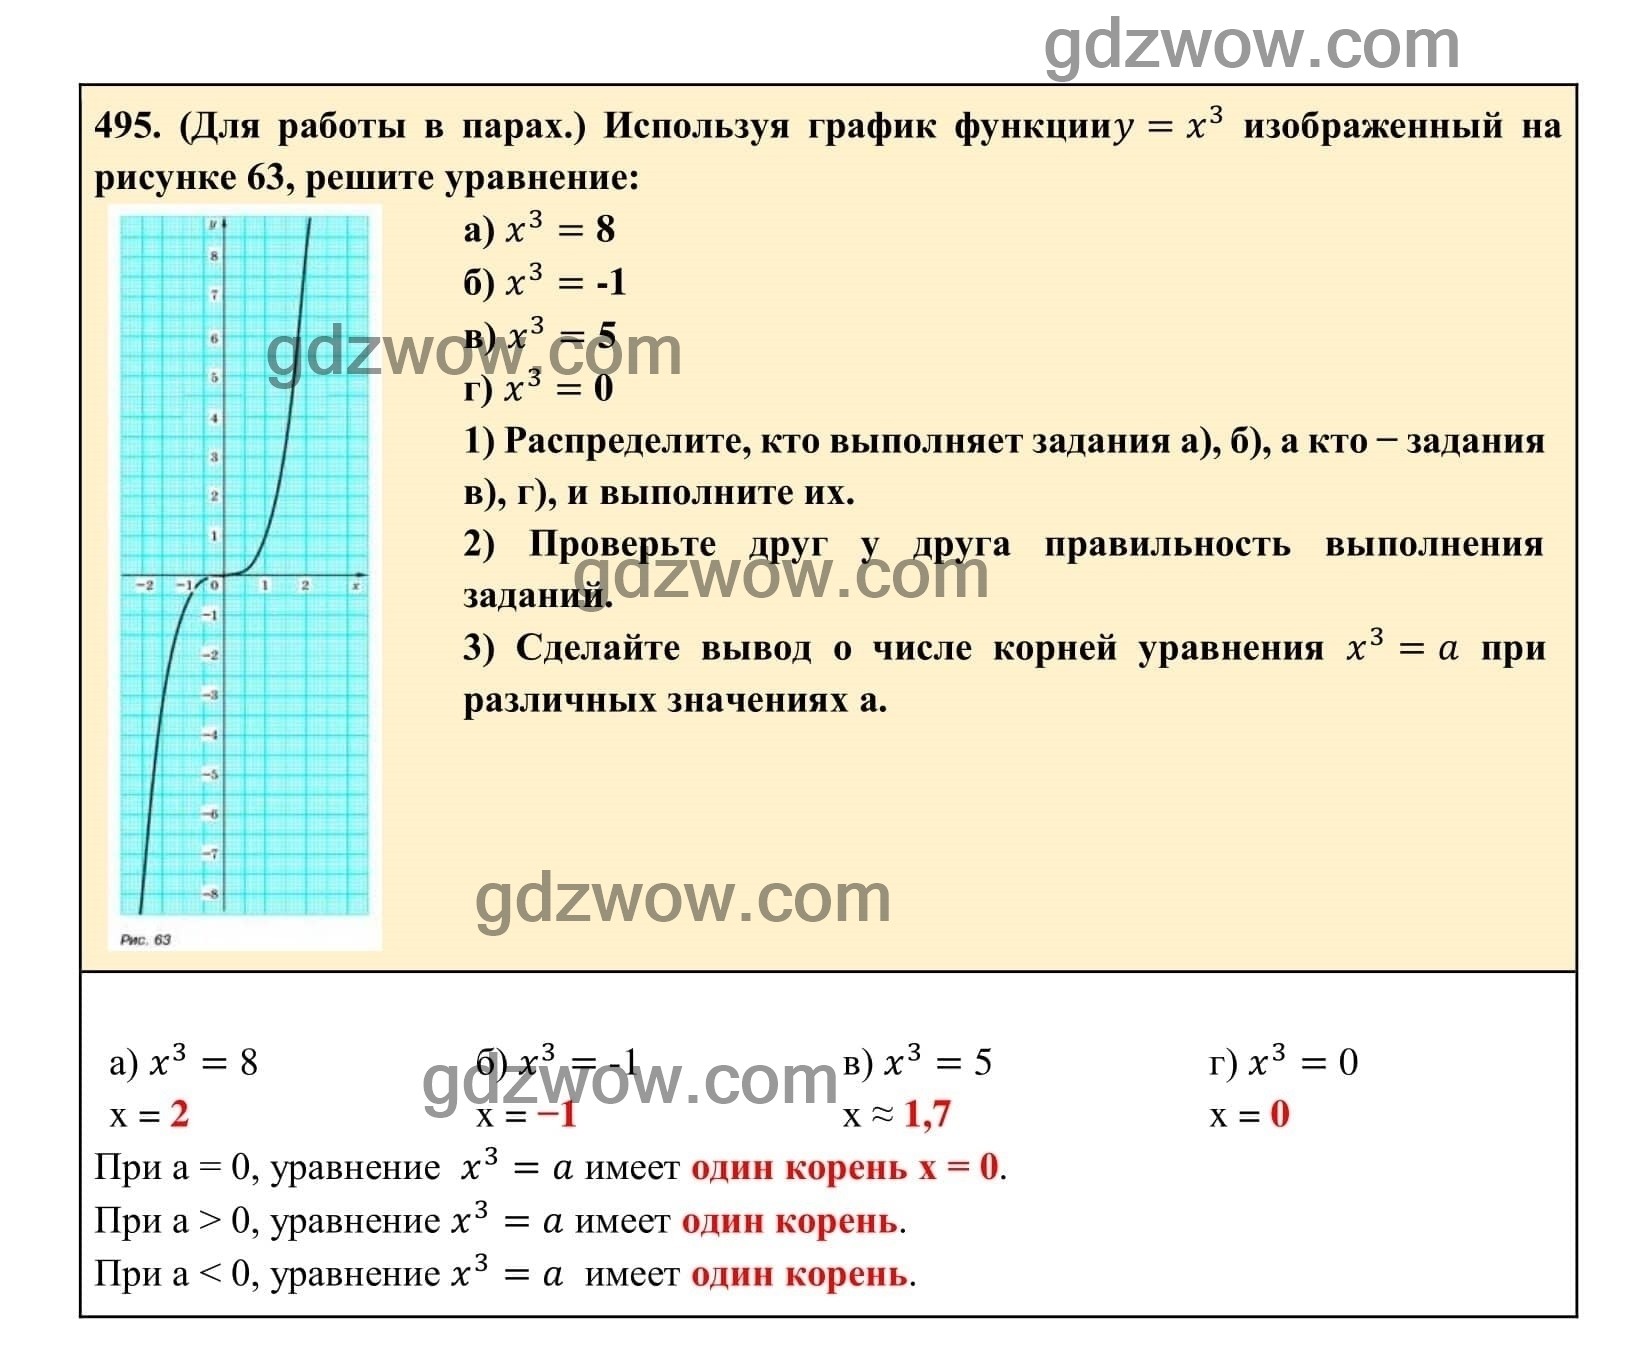 Упражнение 495 - ГДЗ по Алгебре 7 класс Учебник Макарычев (решебник) - GDZwow